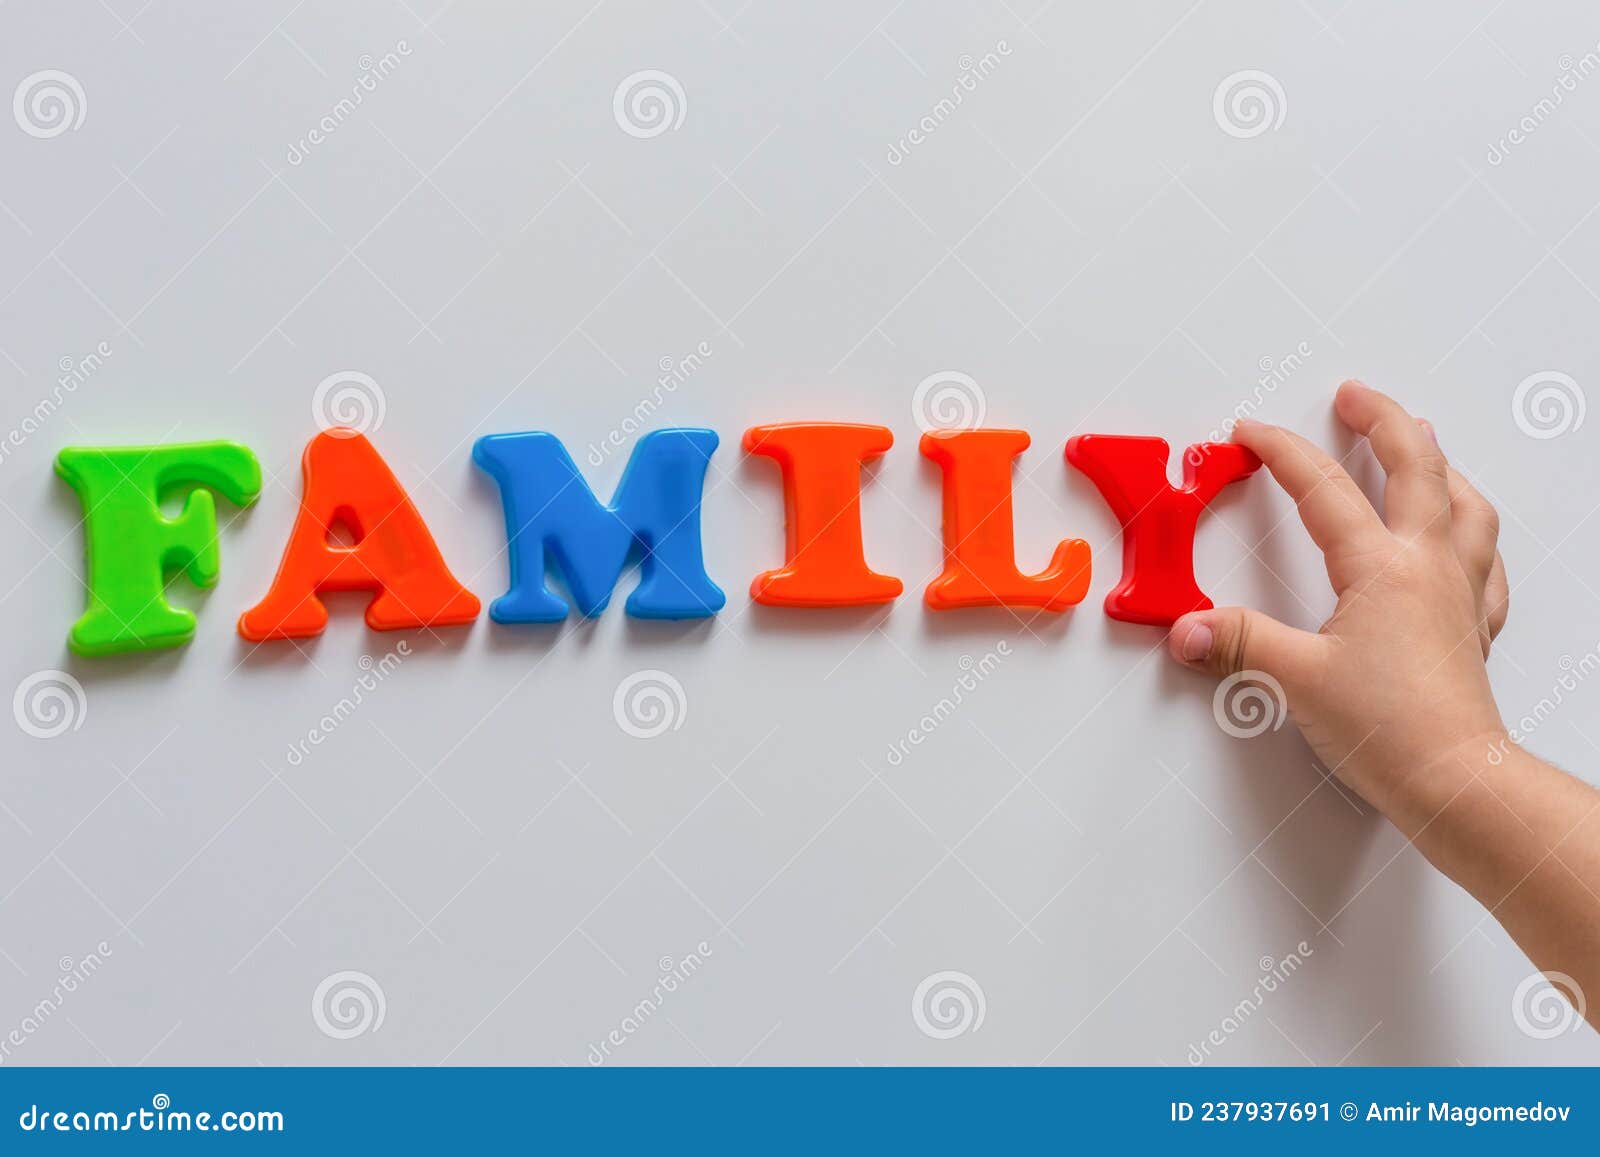 La Parola Famiglia è Fatta Di Lettere Magnetiche Colorate Tipizzate Da Una  Mano Di Bambini. Immagine Stock - Immagine di mani, asilo: 237937691